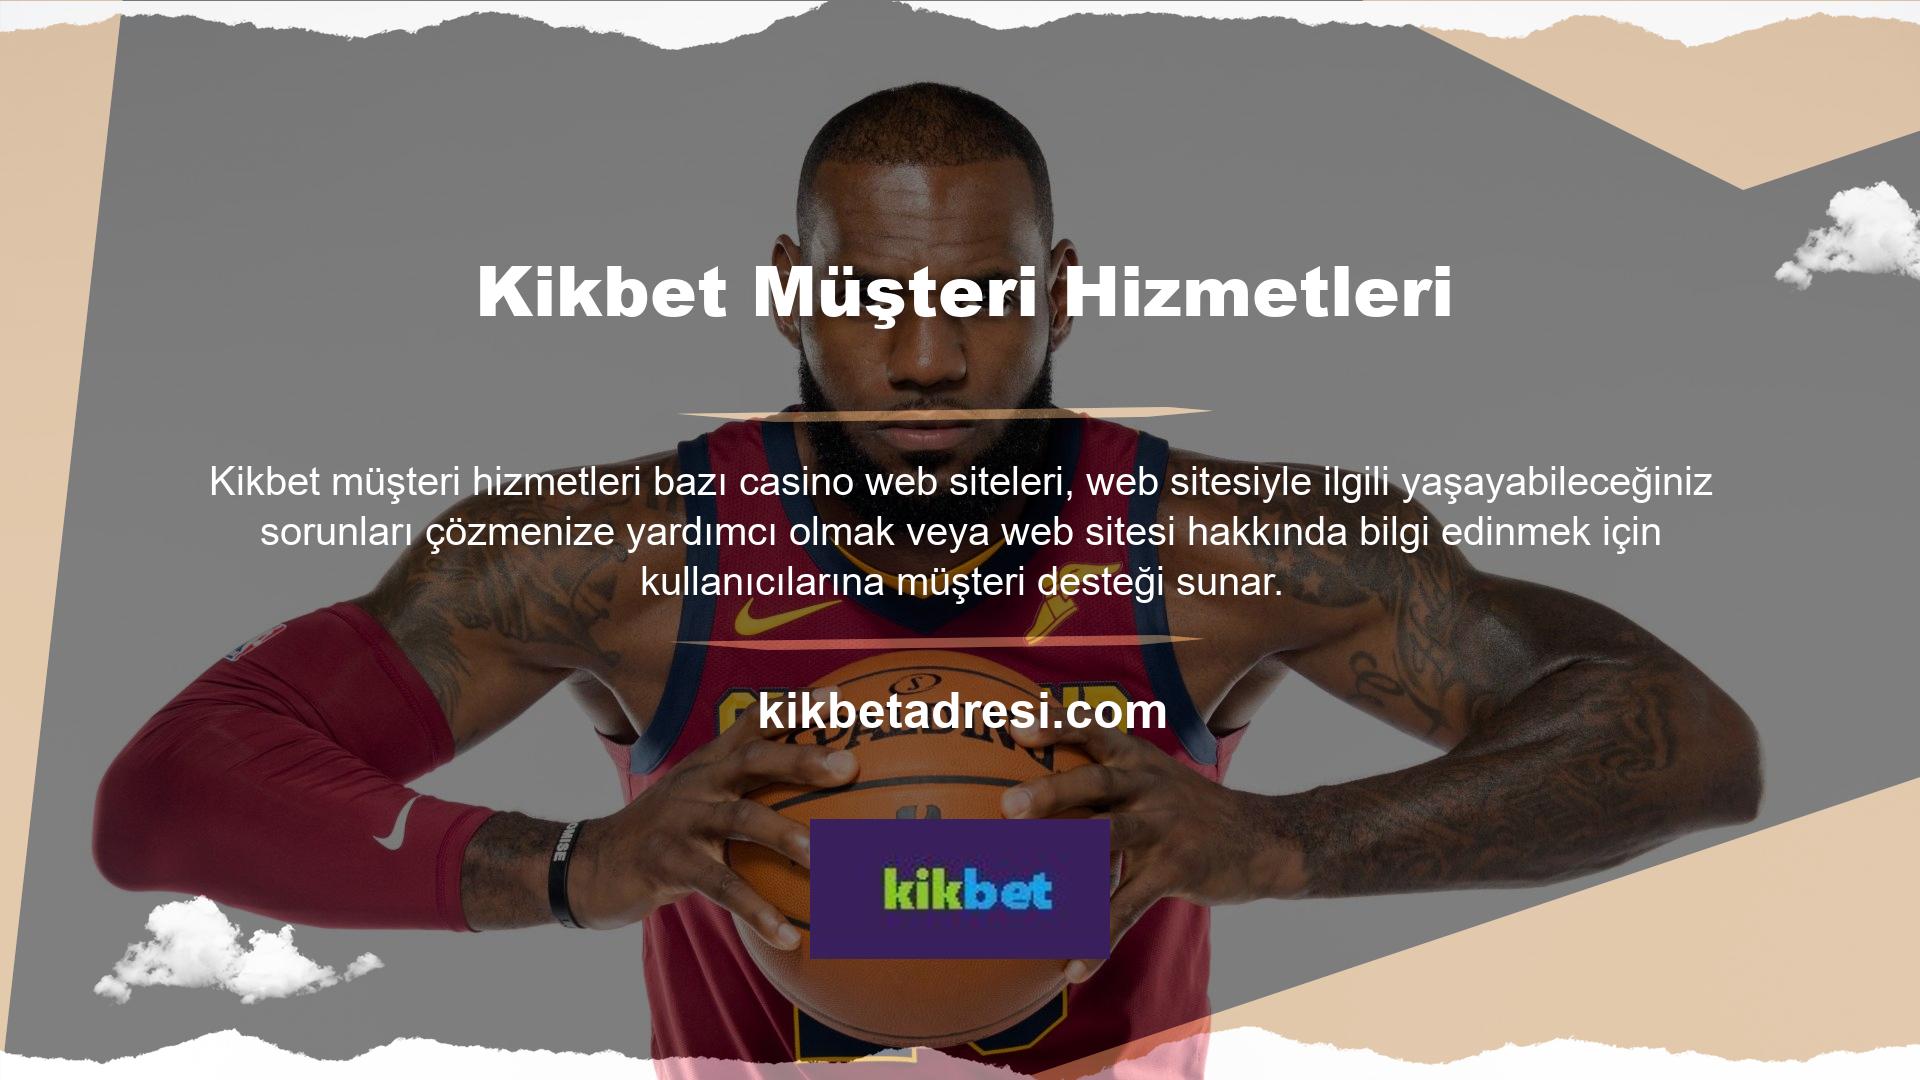 Böyle bir bahis sitesi olan Kikbet, canlı müşteri hizmetleri desteği sunmaktadır